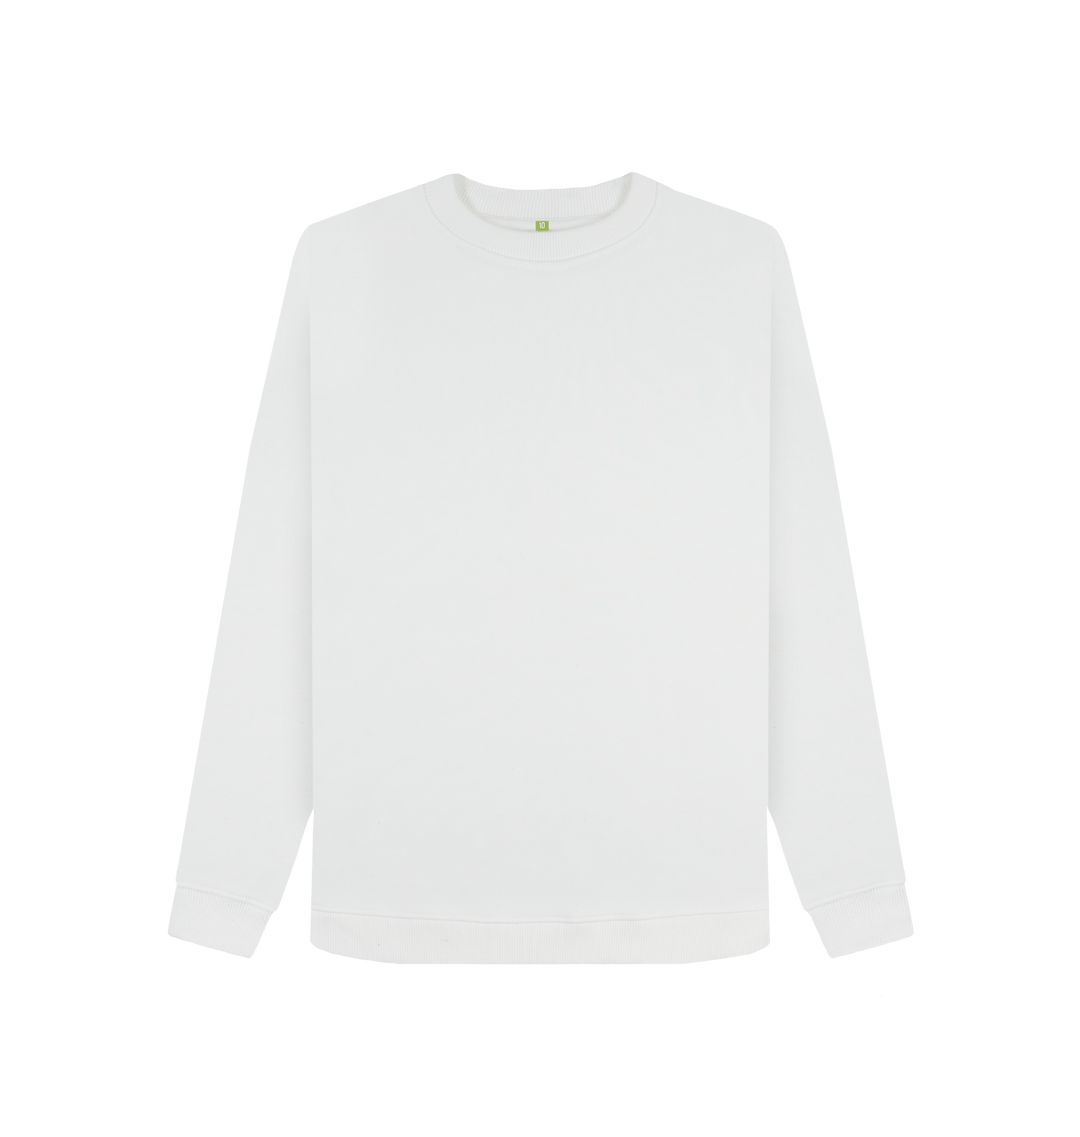 White Women's organic cotton sweatshirt